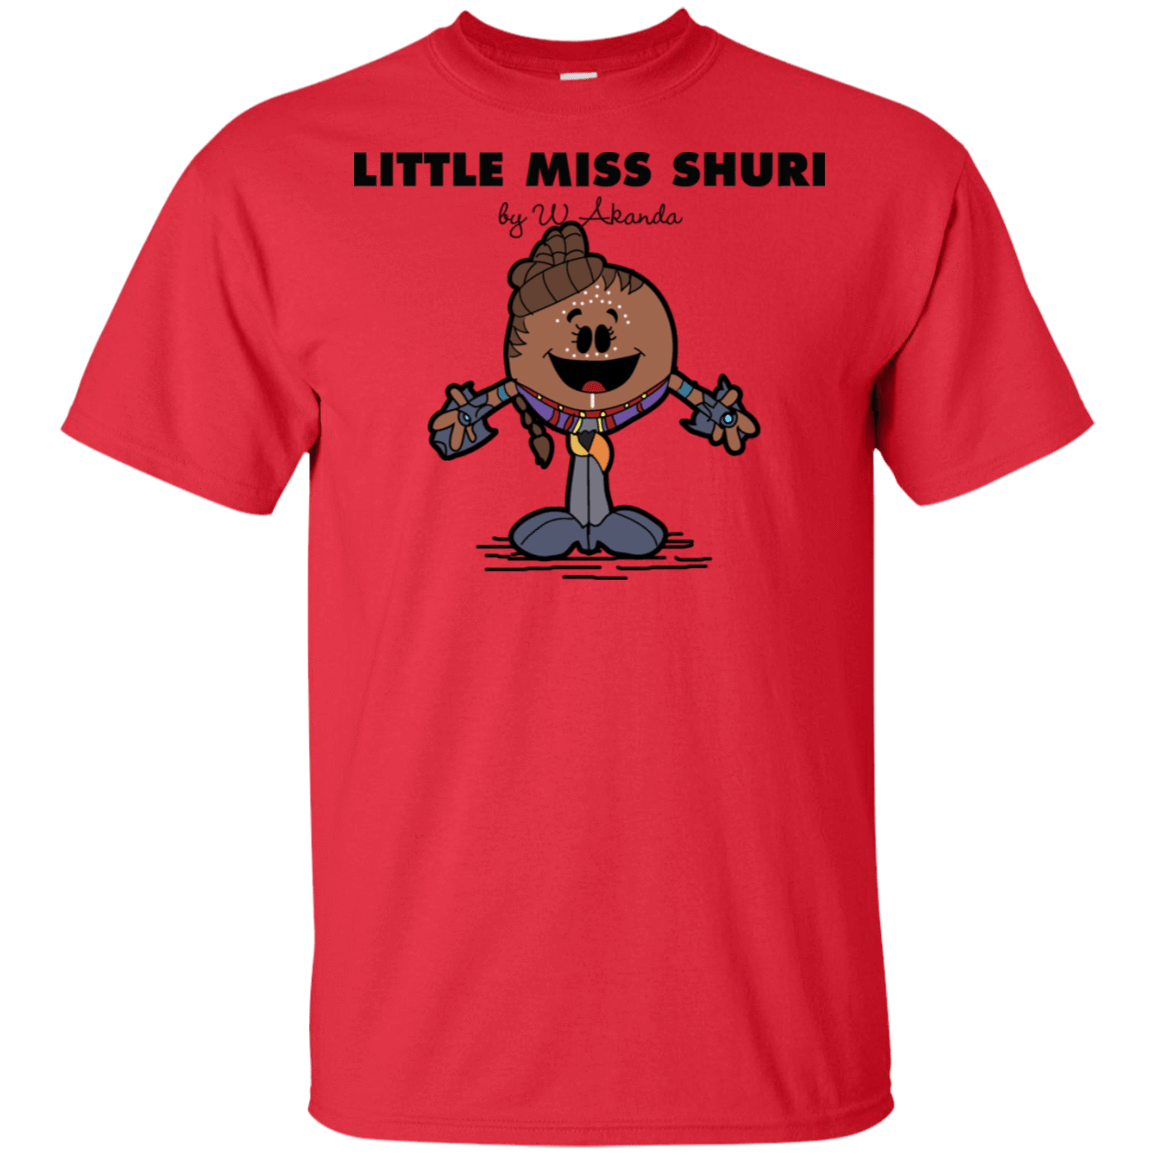 T-Shirts Red / S Little Miss Shuri T-Shirt